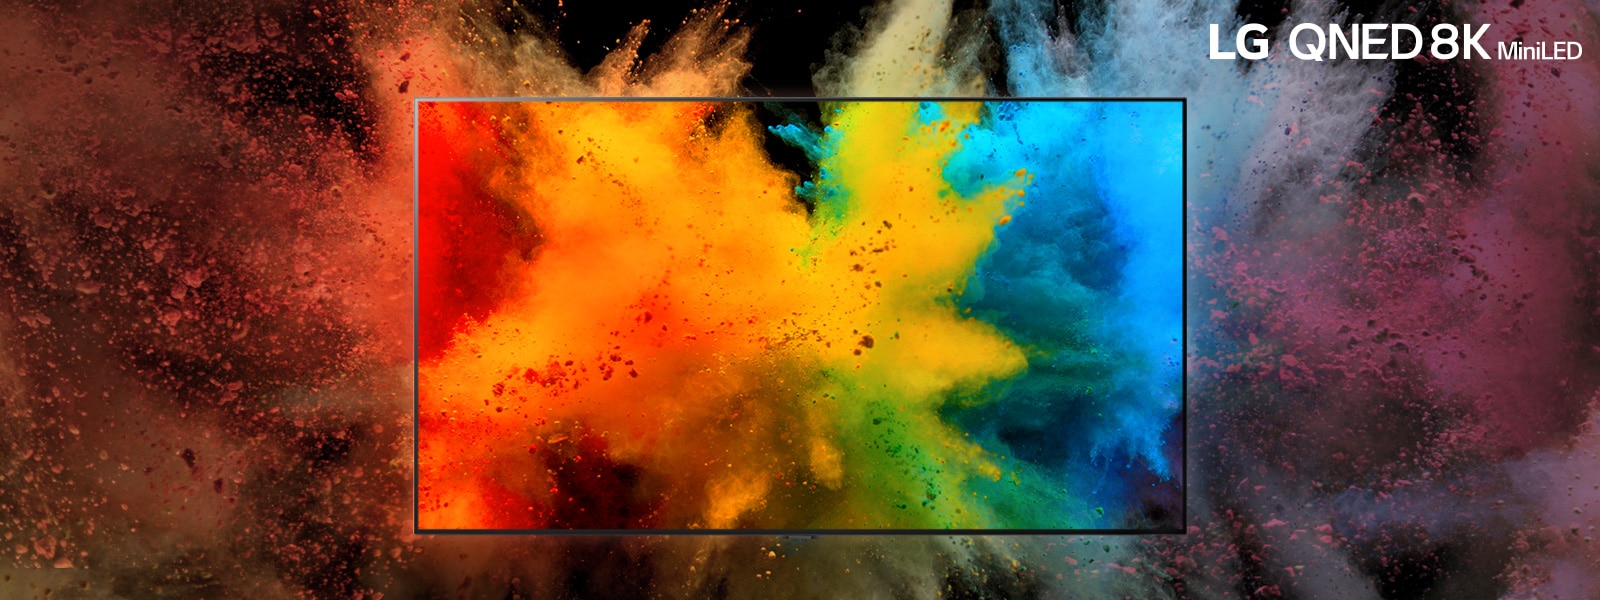 LG QNED v tmavej miestnosti. Farbený prášok vytvára na televízore explóziu dúhových farieb. 